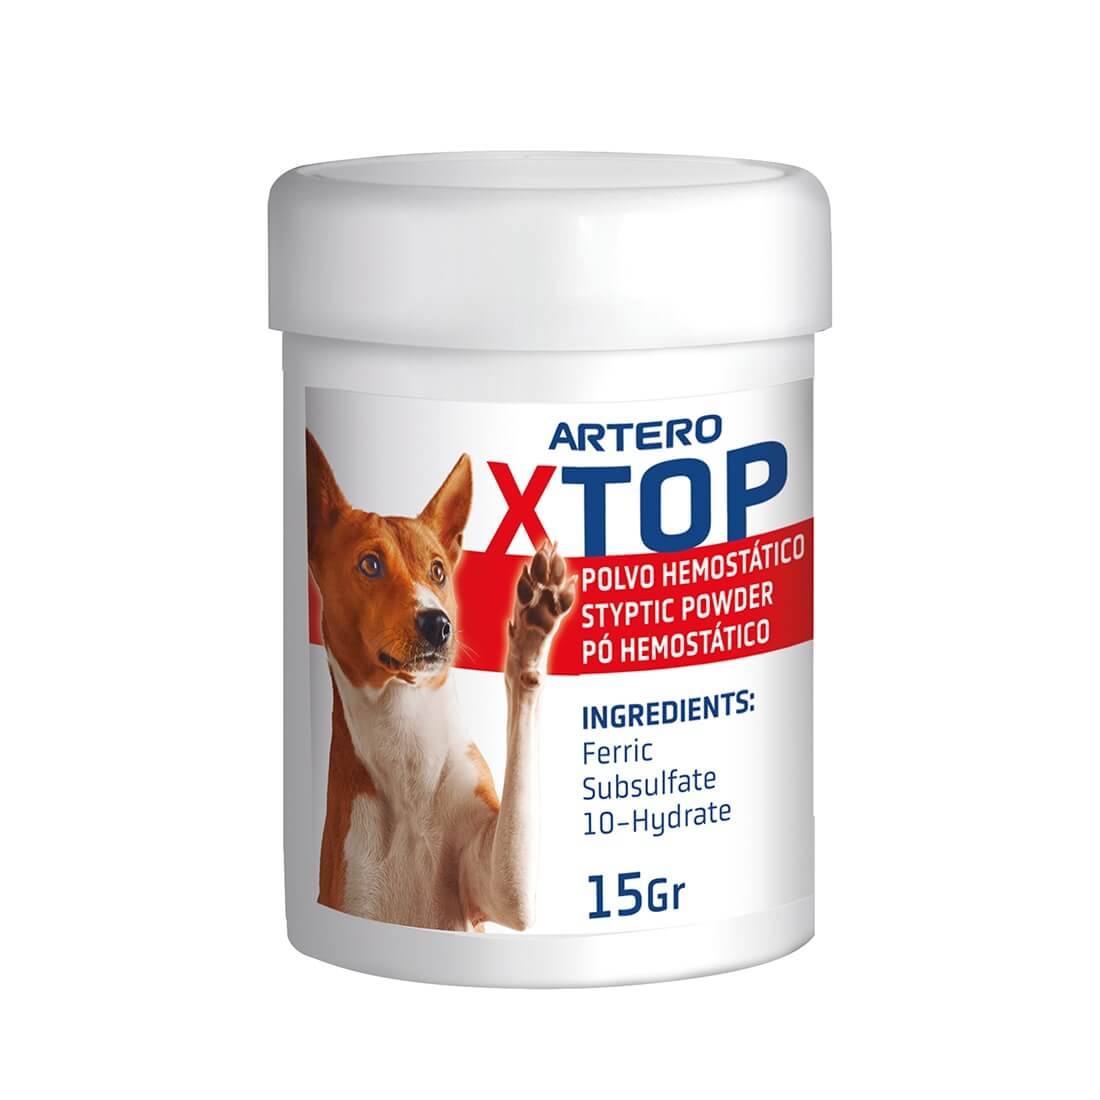 Artero Polvo Hemostático Corta sangre X-Top 15 g  en Gabo&Gordo Pet Shop en Las Palmas de Gran Canaria tienda para mascotas, perros, gatos, conejos, tortugas, animales, accesorios para mascotas